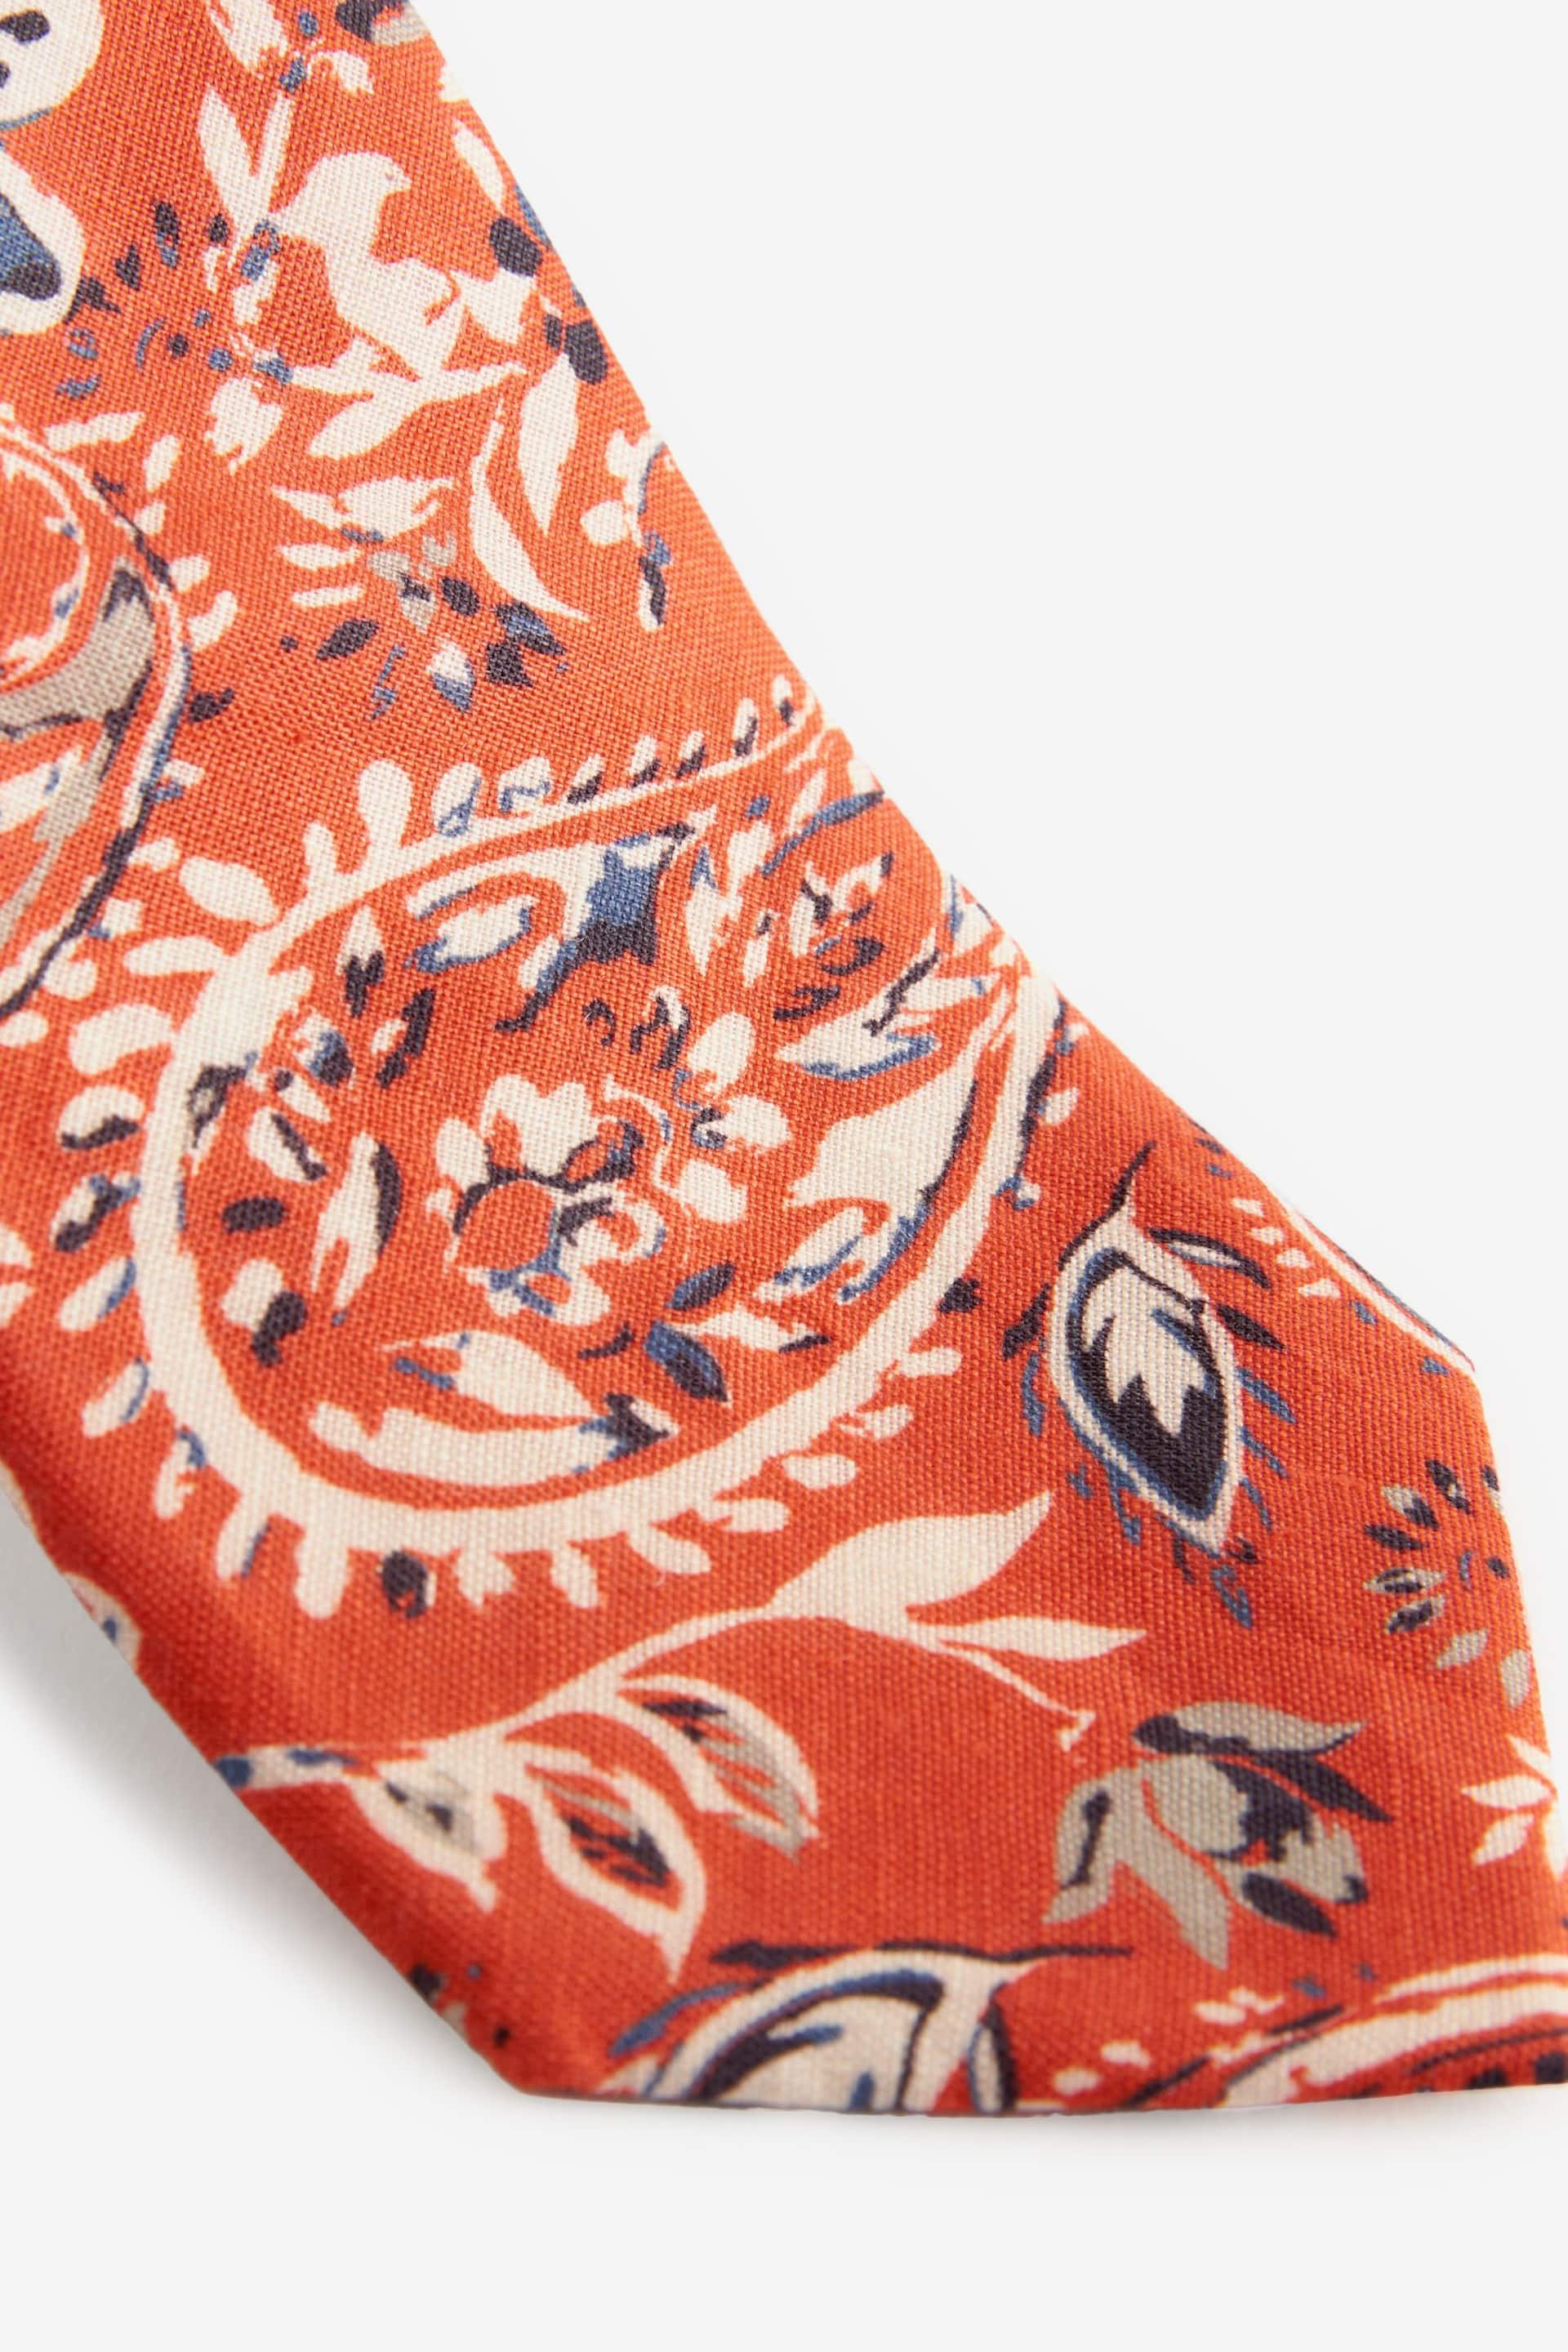 Batik Orange/Neutral Brown Linen Tie And Pocket Square Set - Image 2 of 5